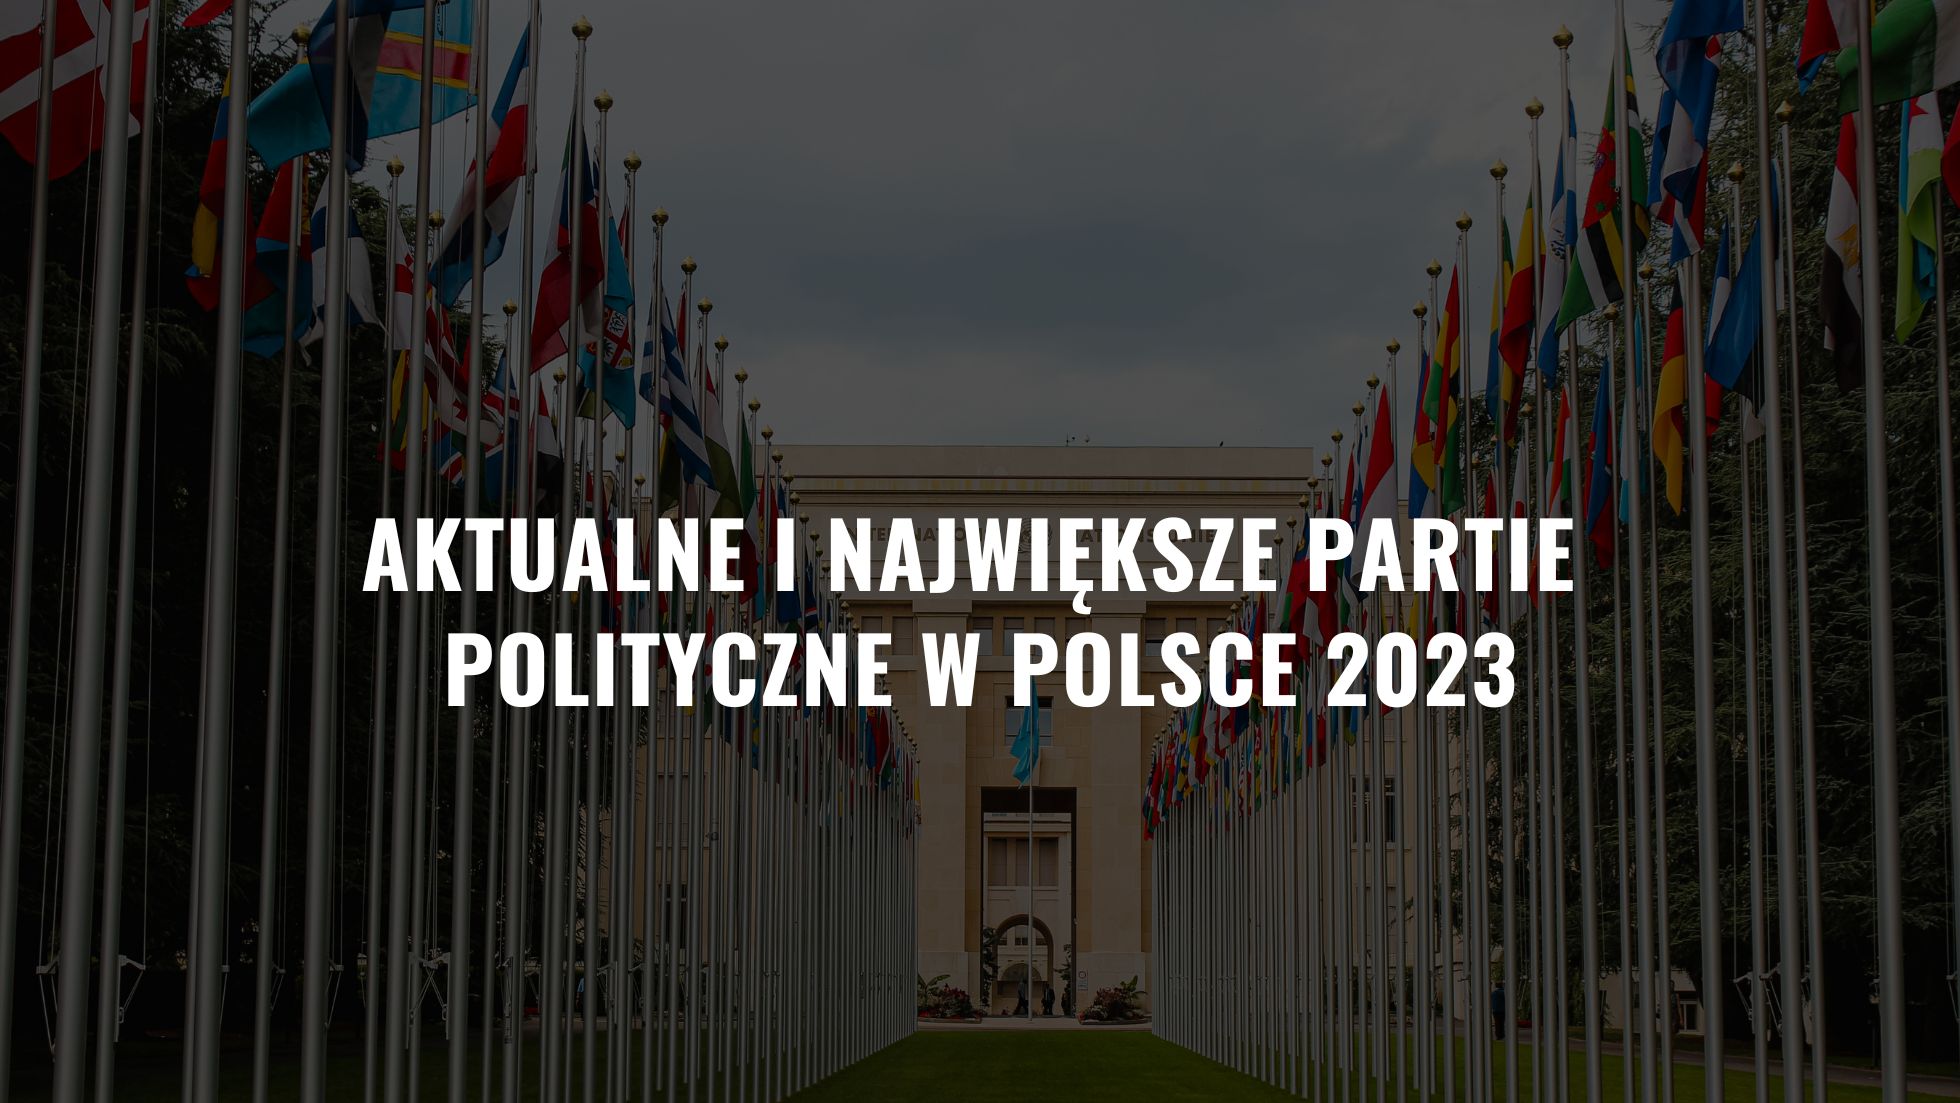 Aktualne i największe partie polityczne w Polsce 2023